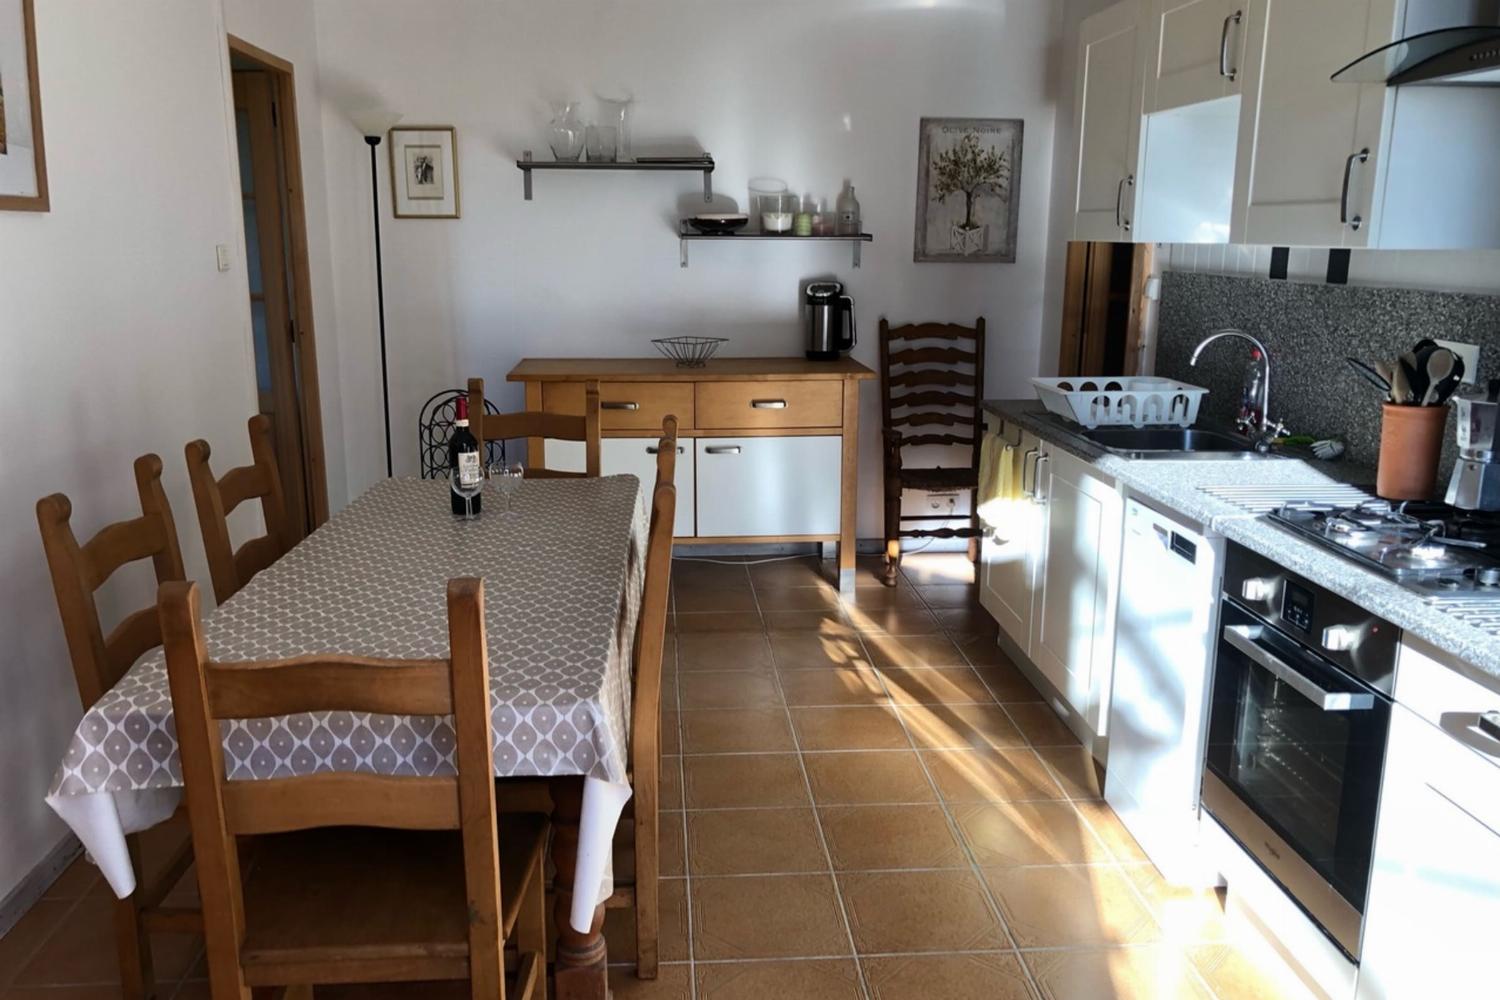 Apartment cuisine | Maison de vacances dans le sud de la France